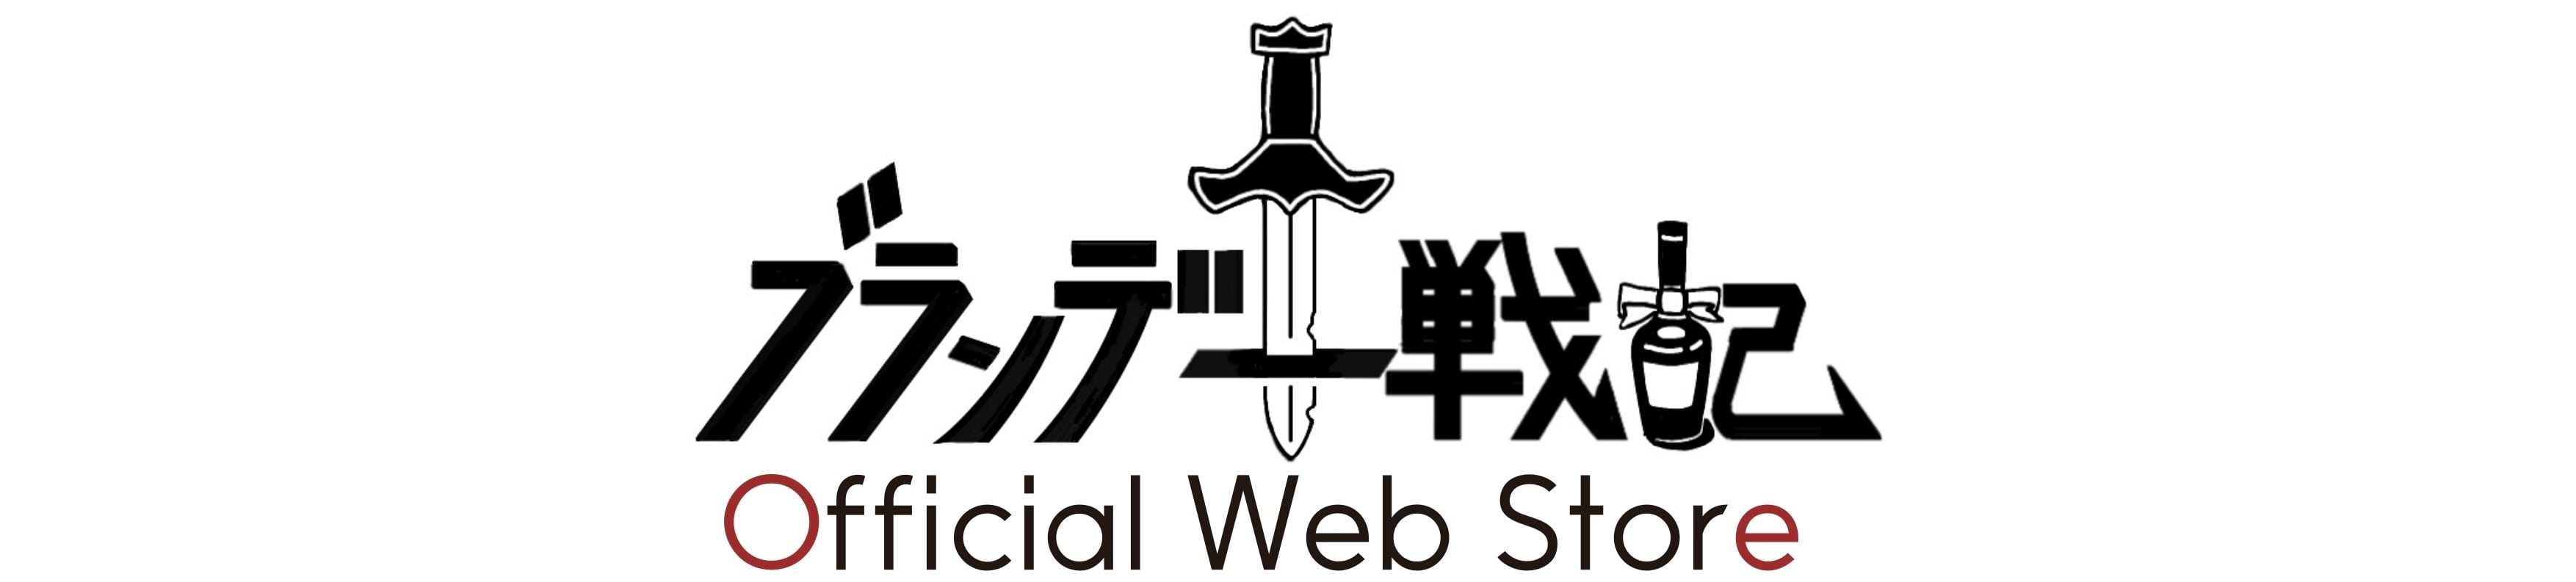 ブランデー戦記 Official Web Store